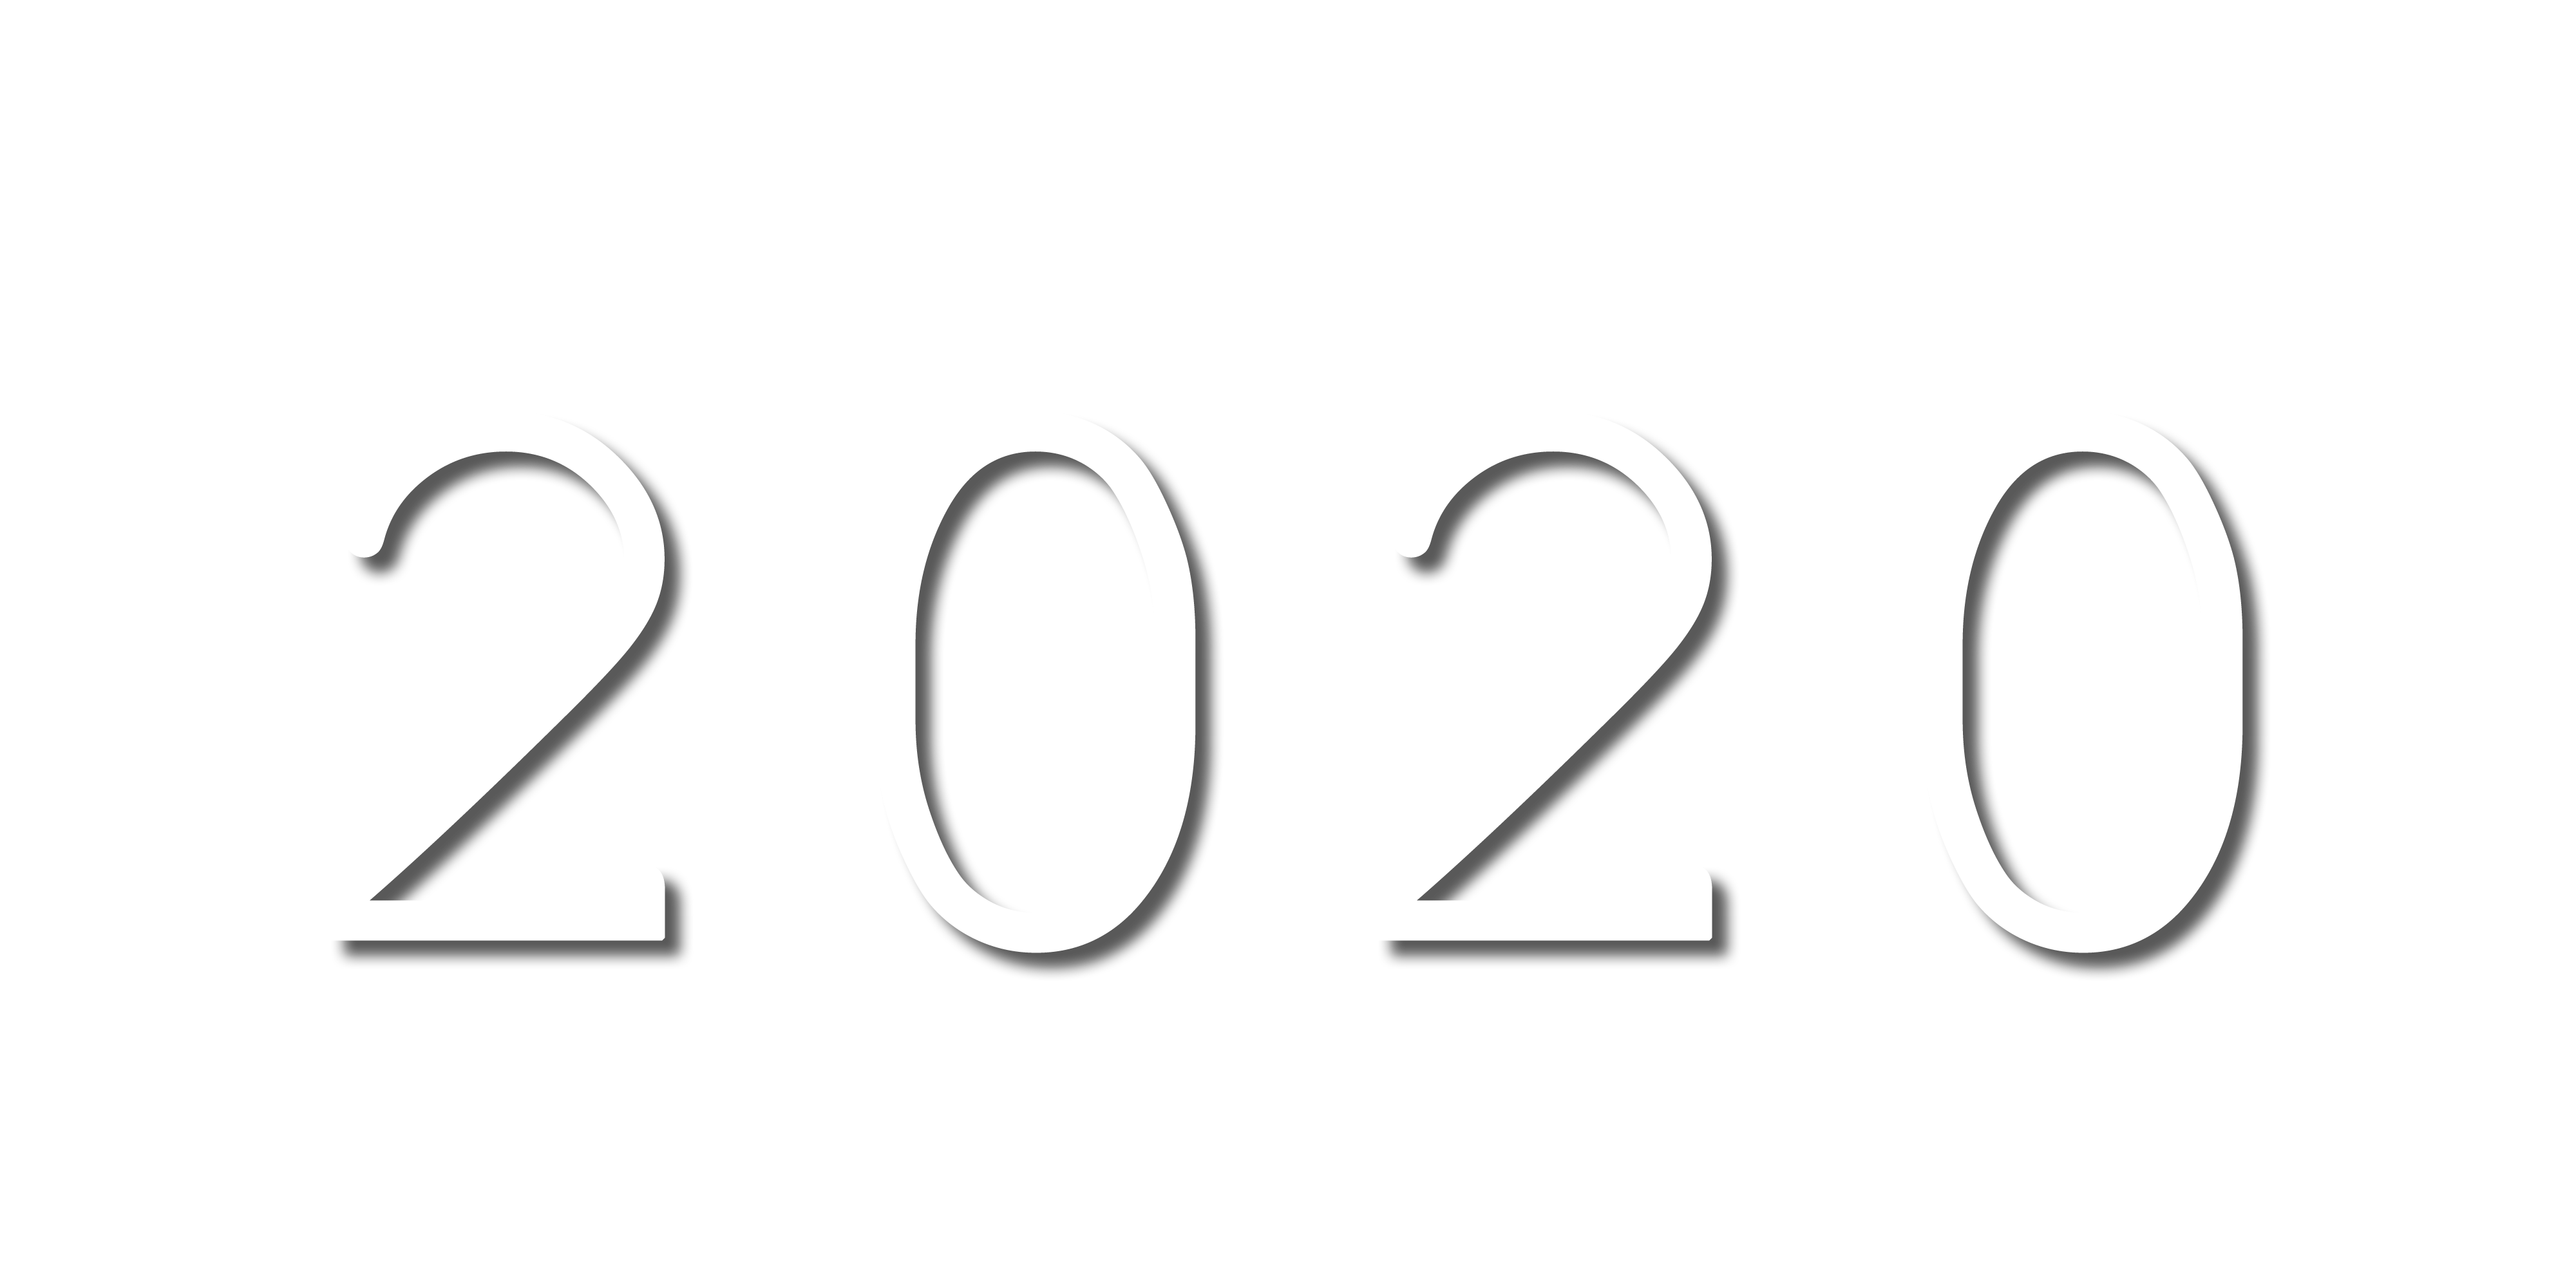 2020 logo png. Цифры белые на прозрачном фоне. Цифры 2020 на прозрачном фоне. Надпись цифры на прозрачном фоне. 2020 На прозрачном фоне.